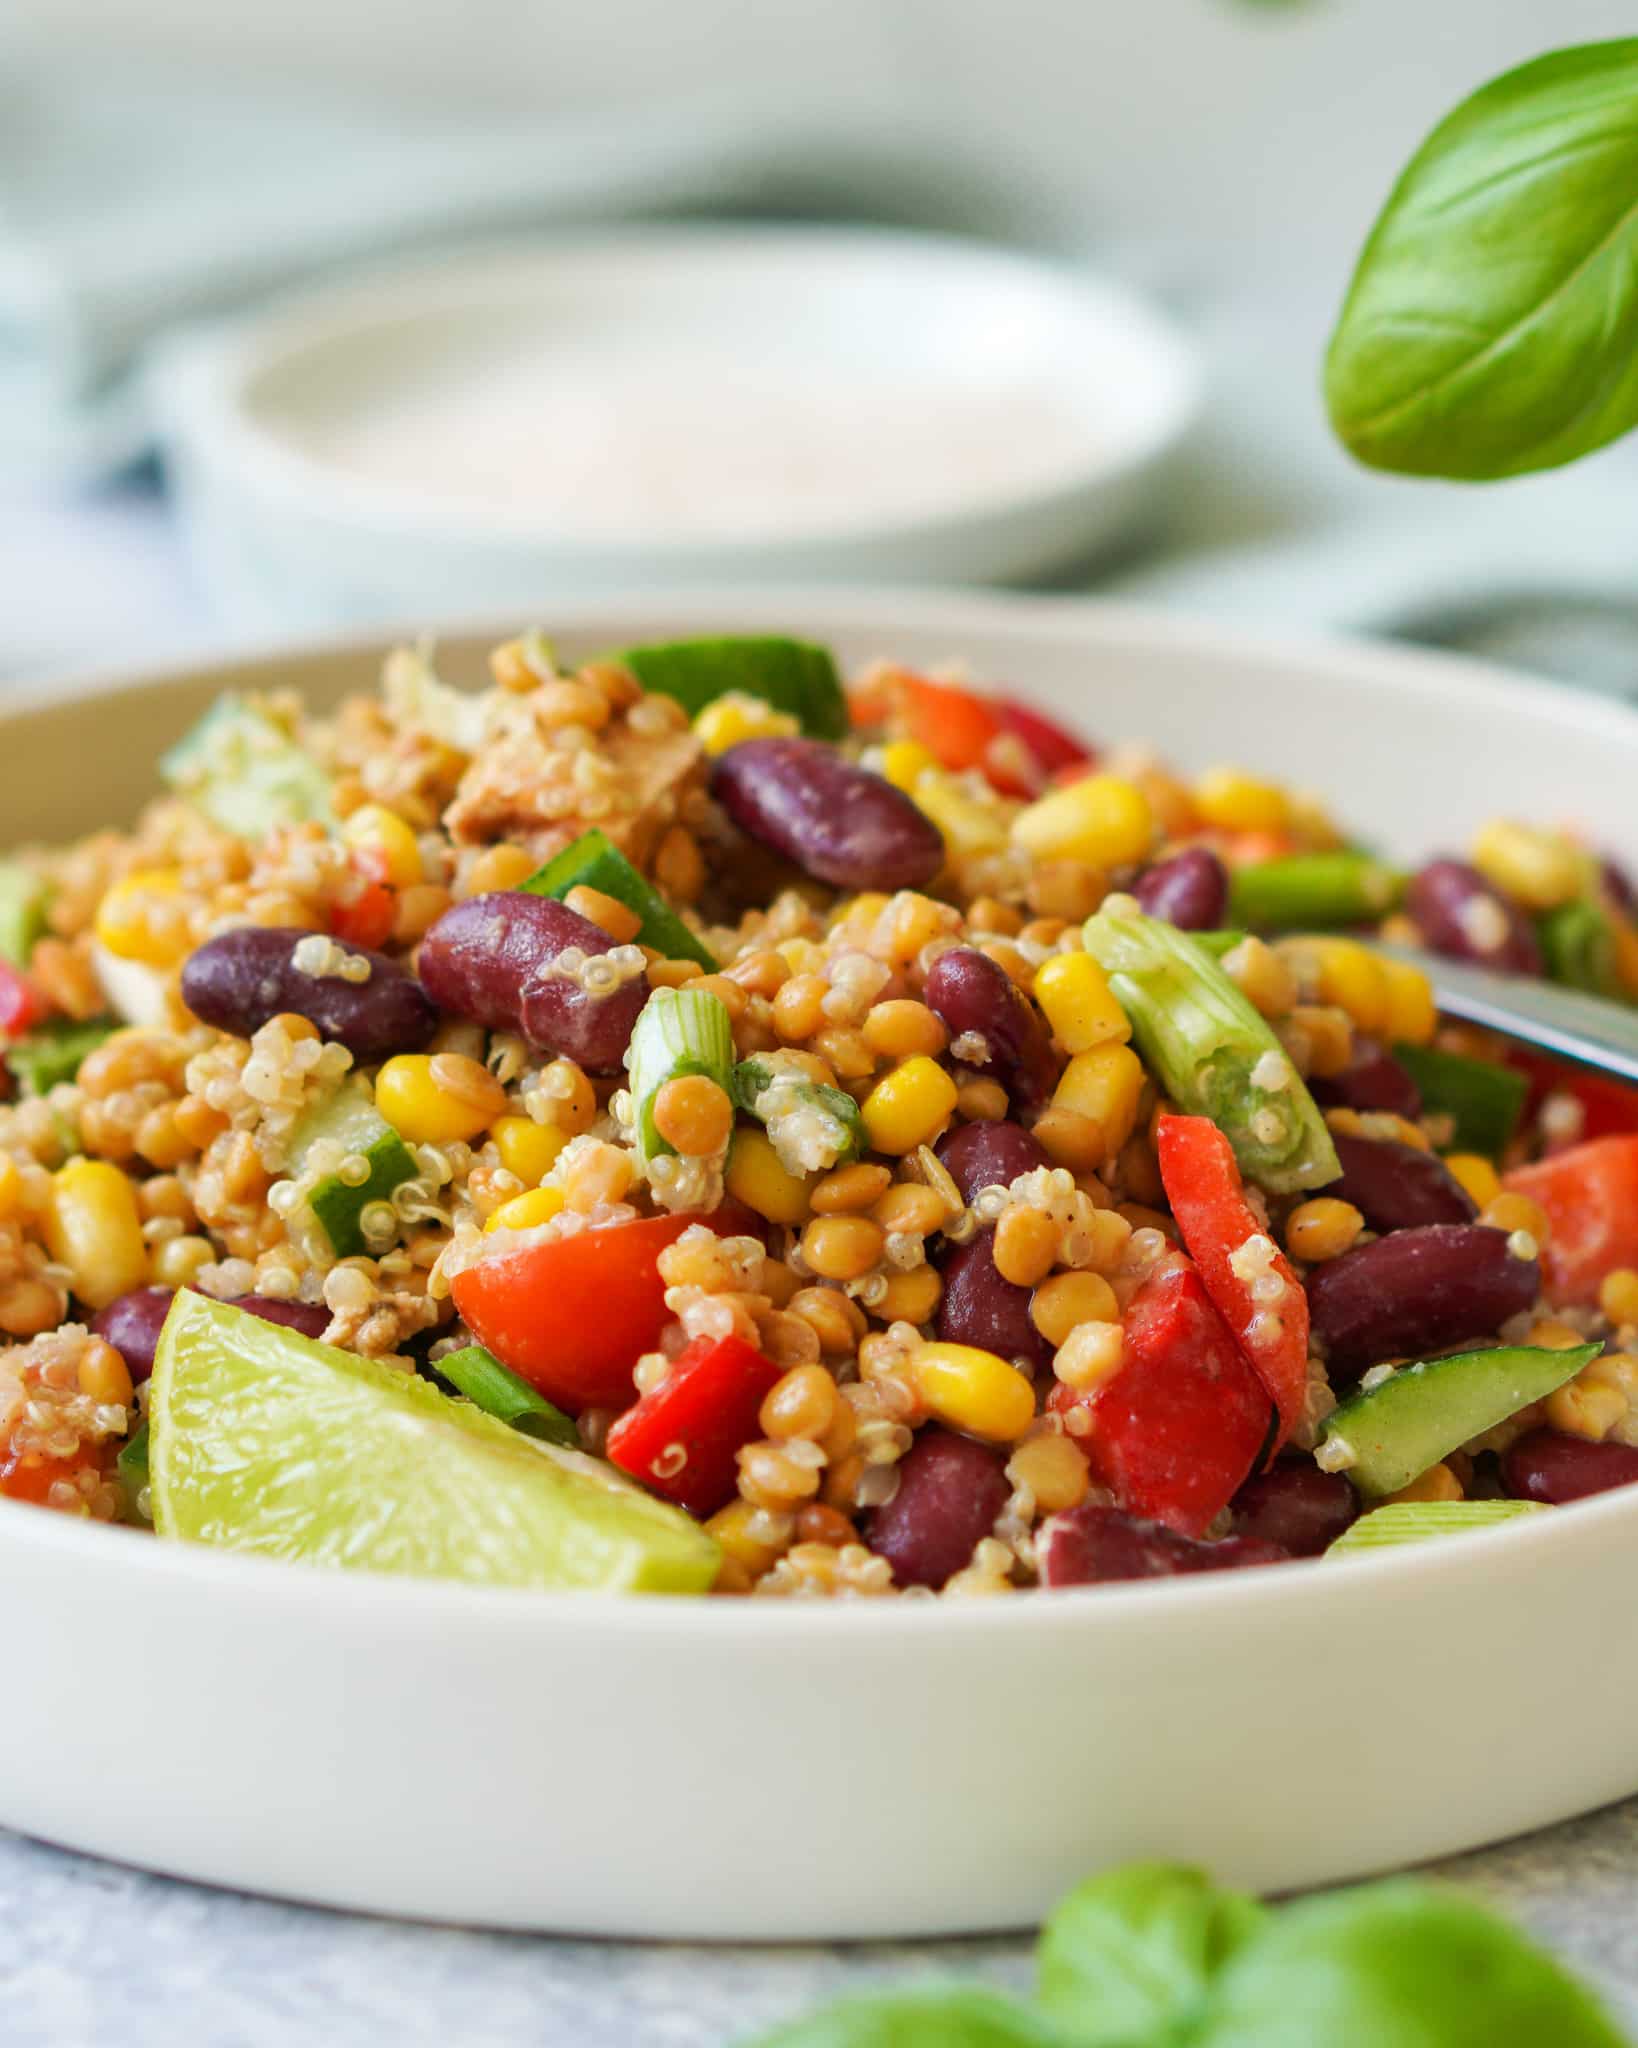 Auf dem Bild zusehen ist ein Salat mit Hülsenfrüchten und roten Bohnen